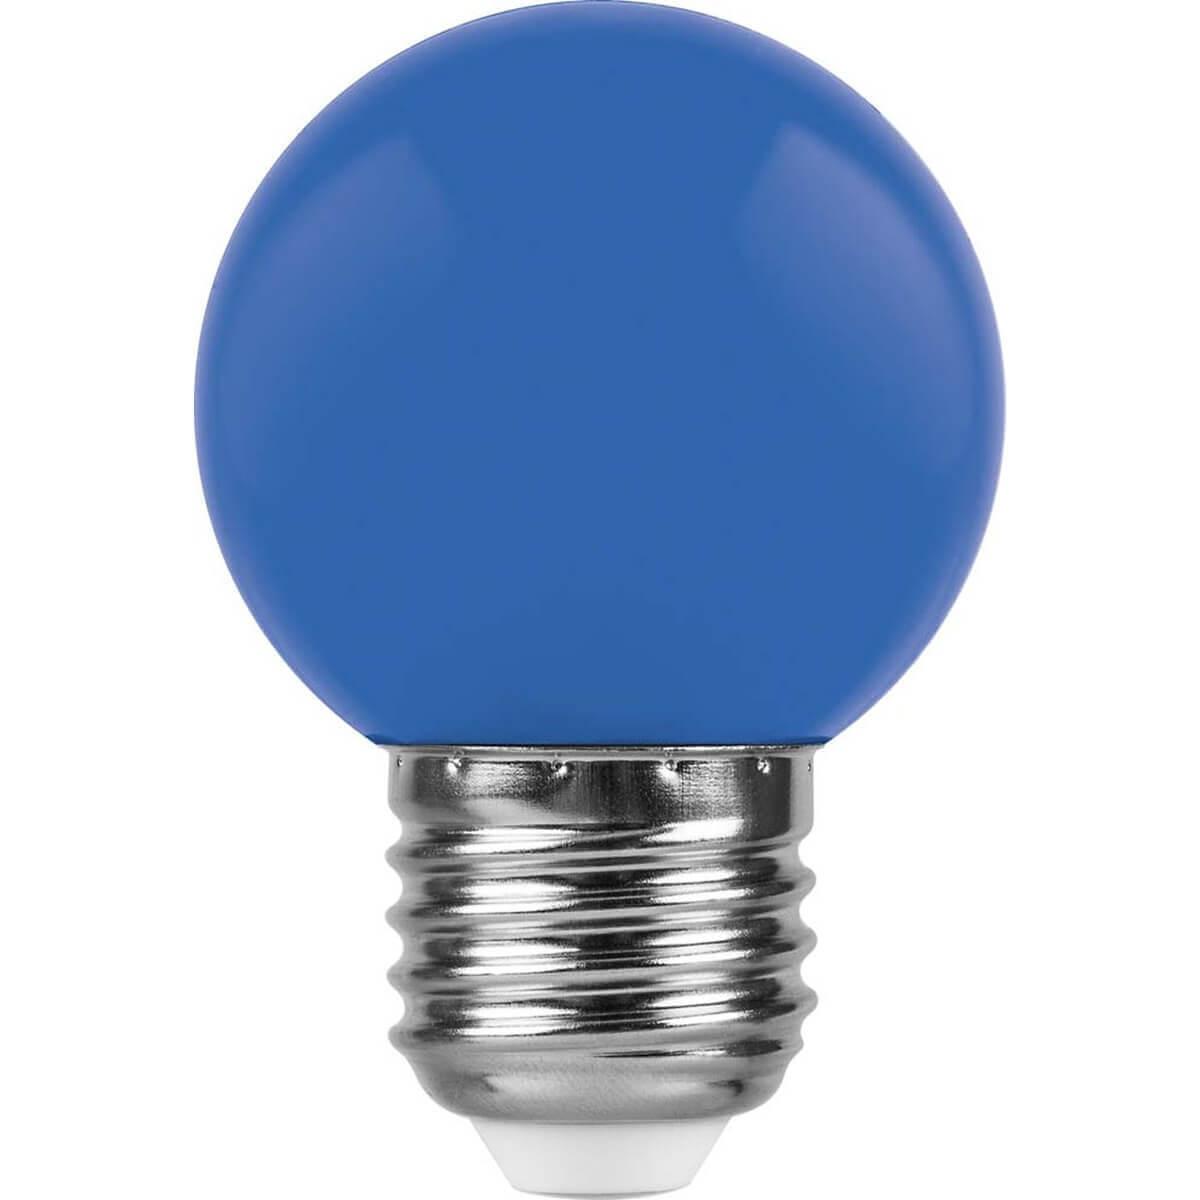 Лампа светодиодная Feron E27 1W синий Свеча Матовая LB-376 25925